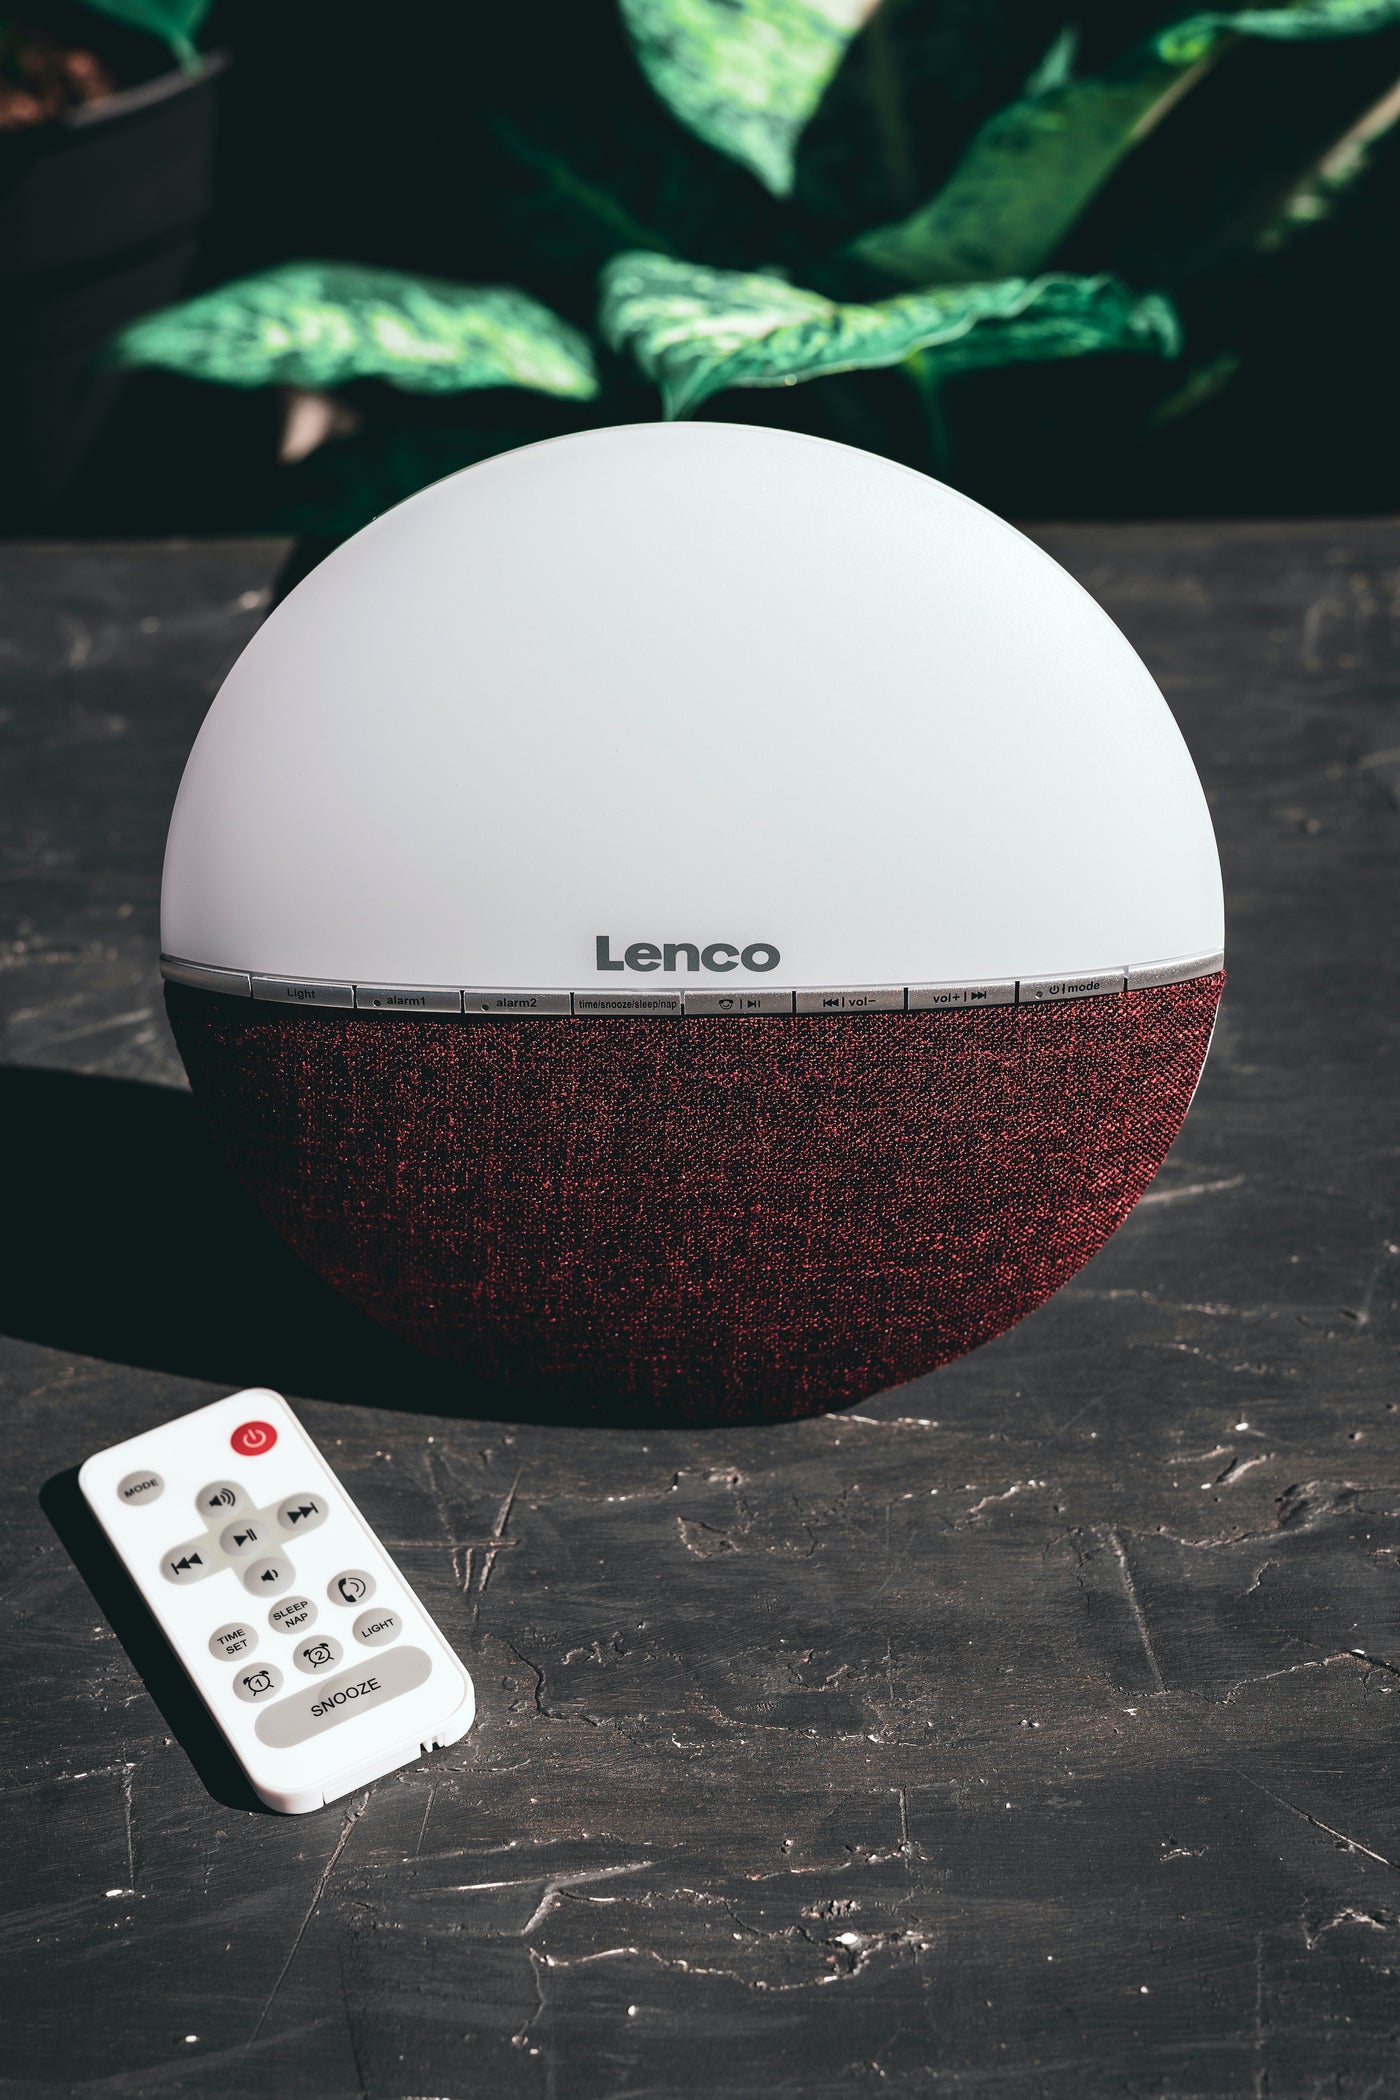 LENCO CRW-4BY - Radio z budzikiem FM - Światło budzenia za pomocą Bluetooth® - Czerwony